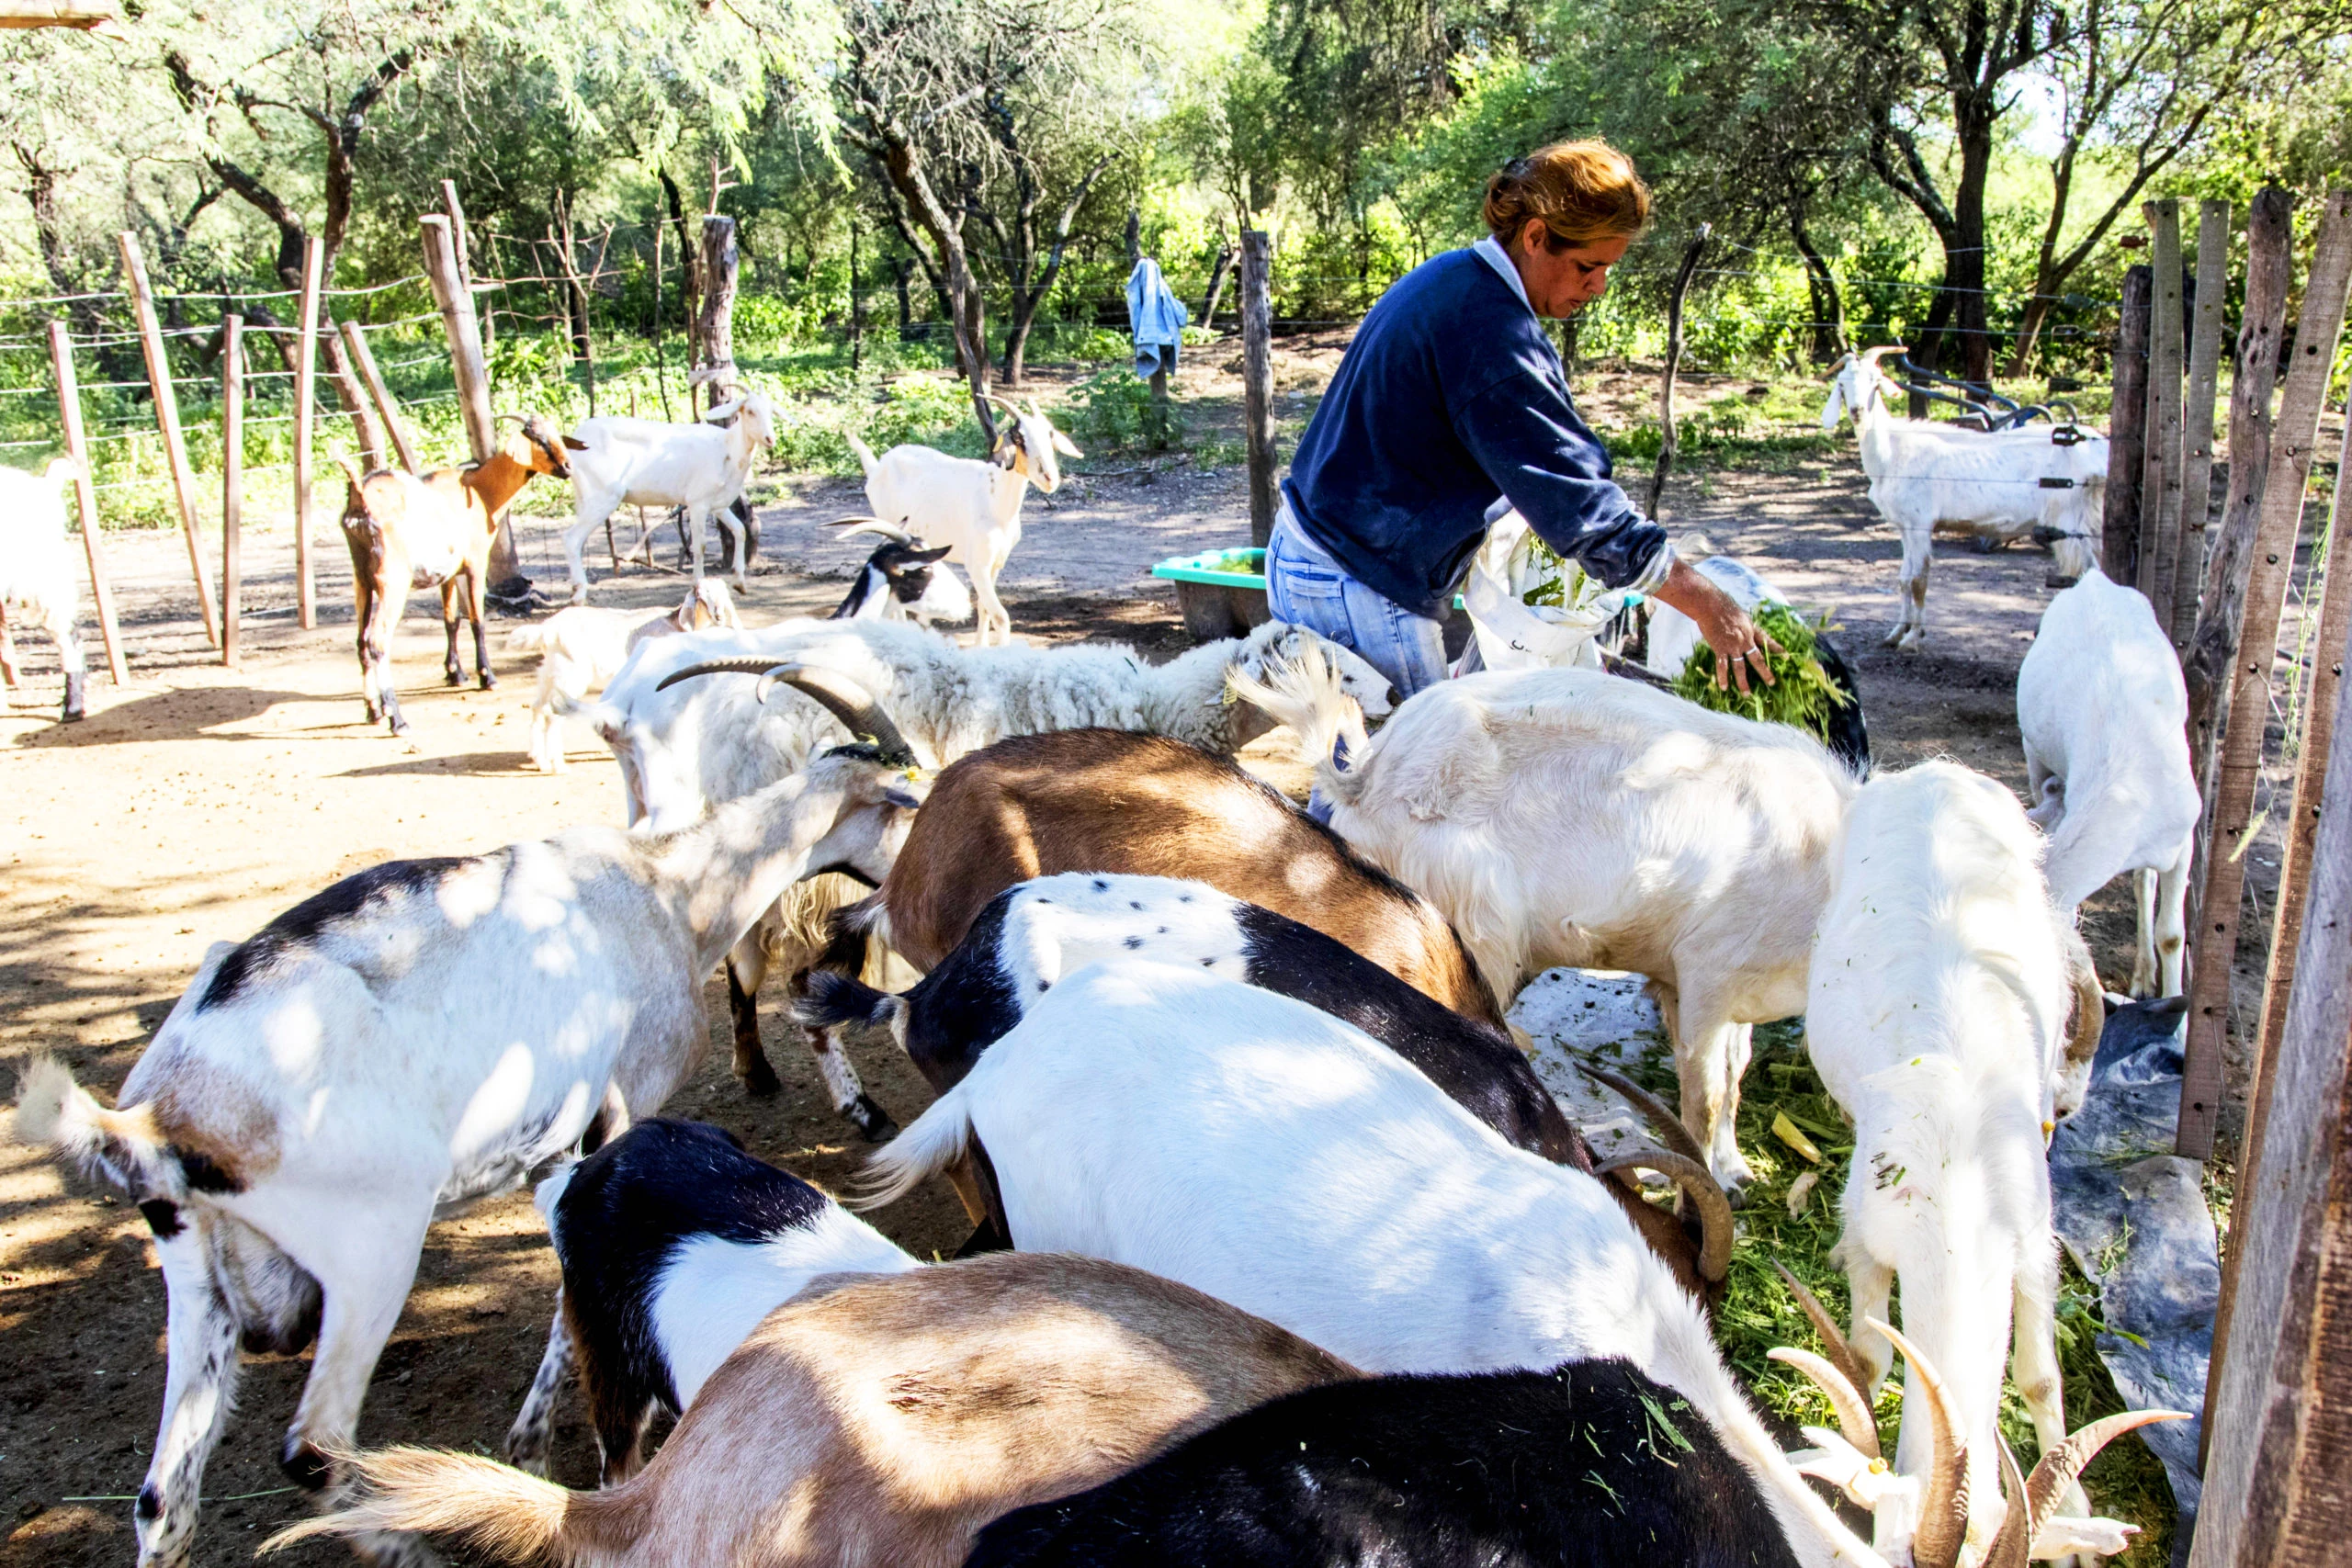 Pequeña productora alimentando su majada, miembro de Pastoras del Monte y de la Red Mujeres Rurales. Foto: El futuro está en el monte.